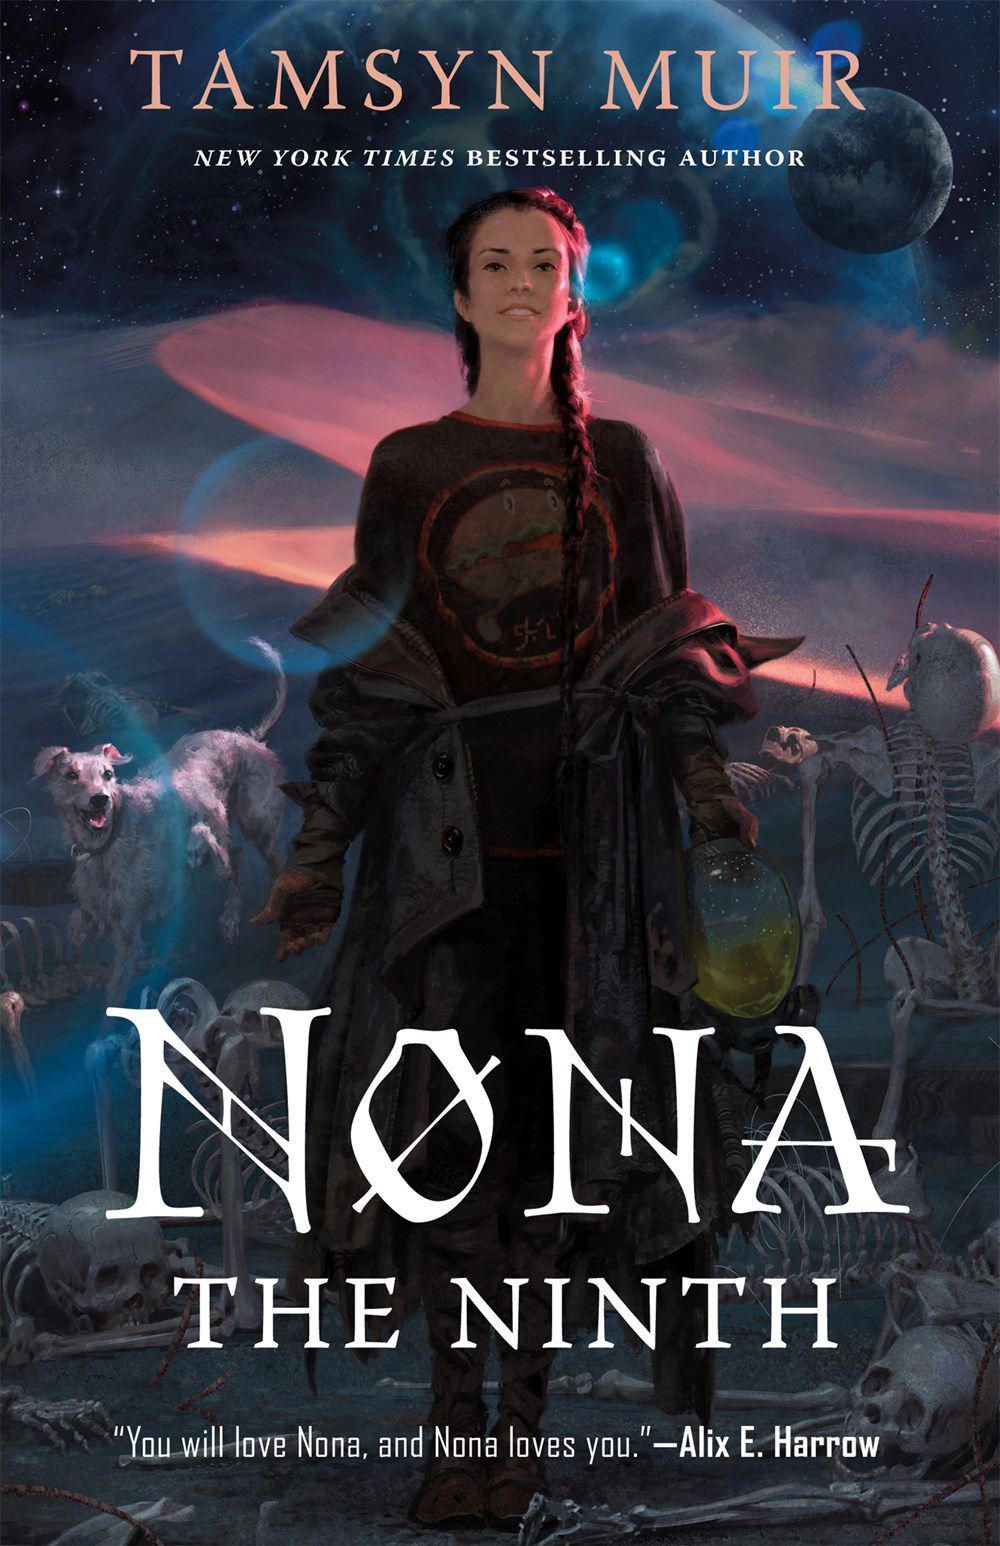 Copertina di Nona the Ninth di Tamsyn Muir, con una persona con i capelli lunghi davanti a un cane e alcuni scheletri.